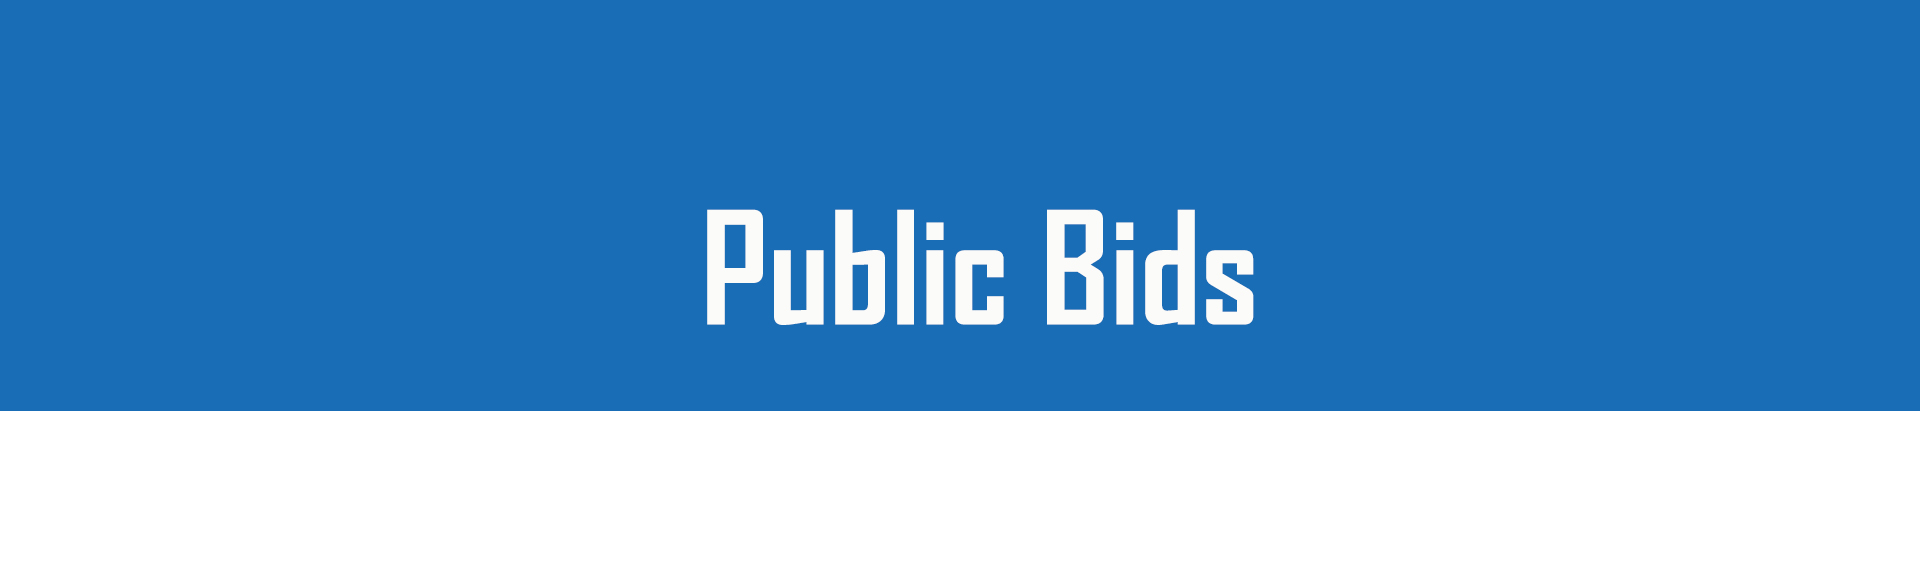 Public Bids